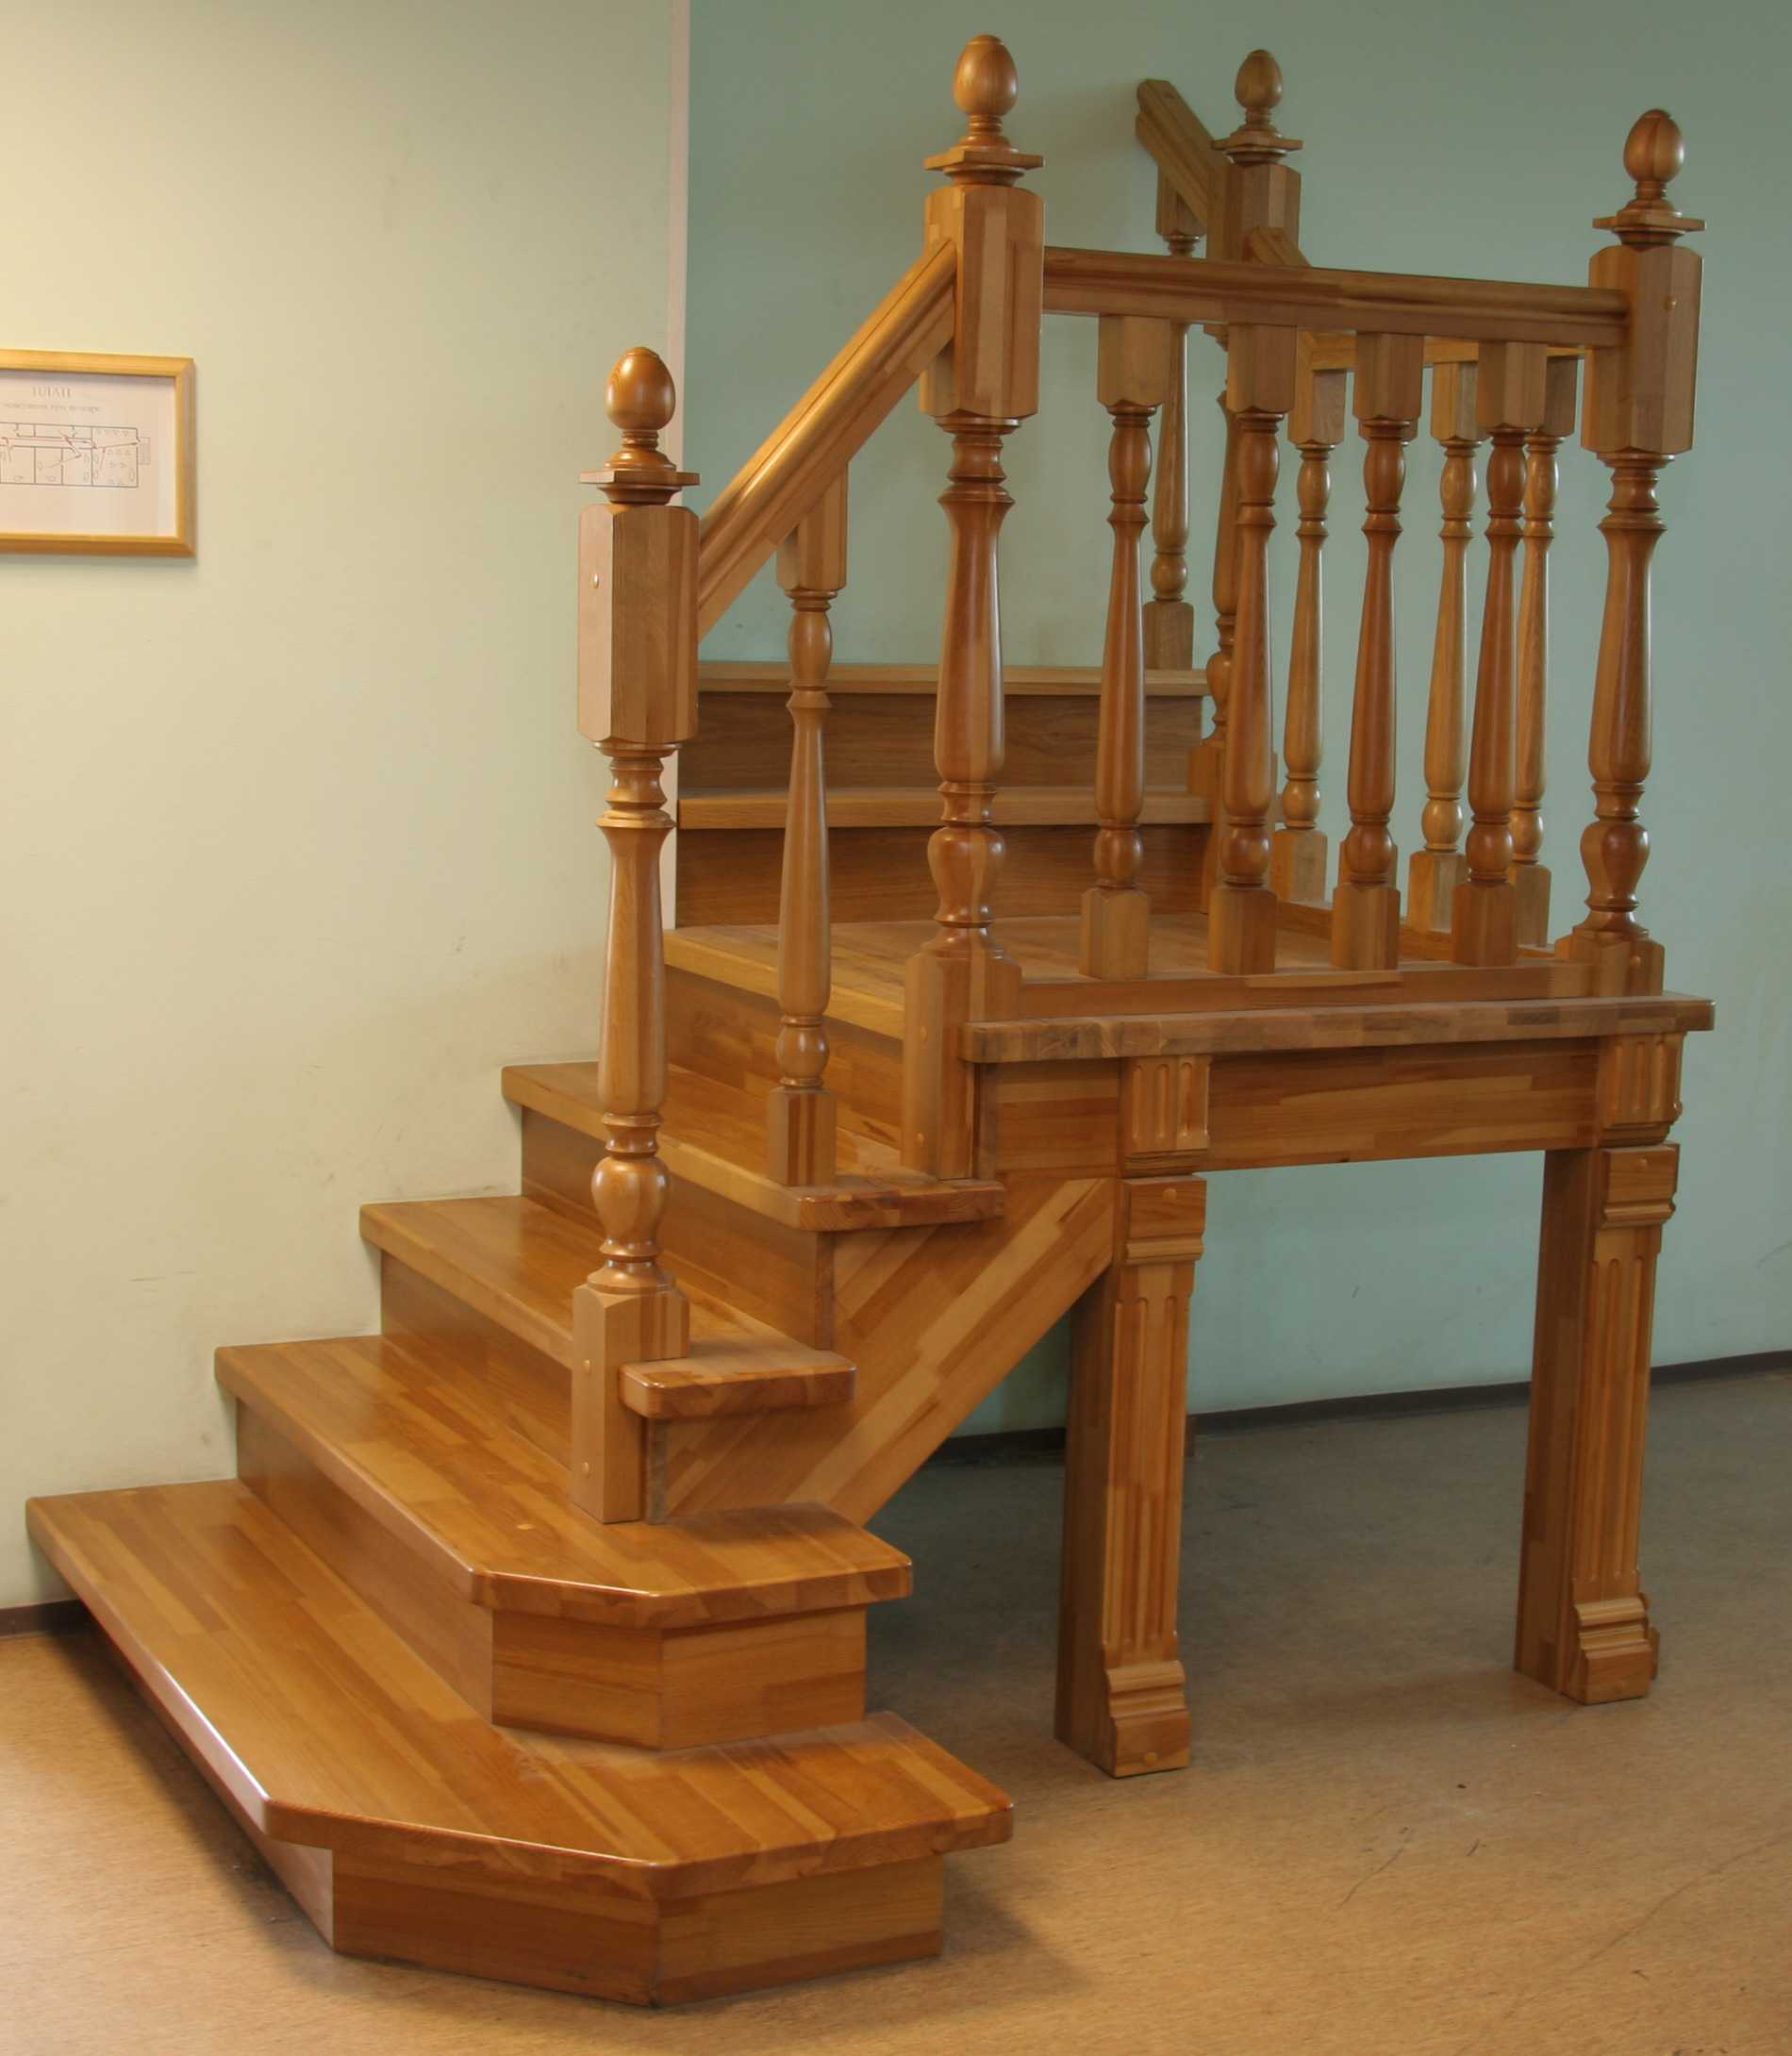 Установка балясин на деревянную лестницу своими руками: варианты крепления, этапы монтажа, фото и видео